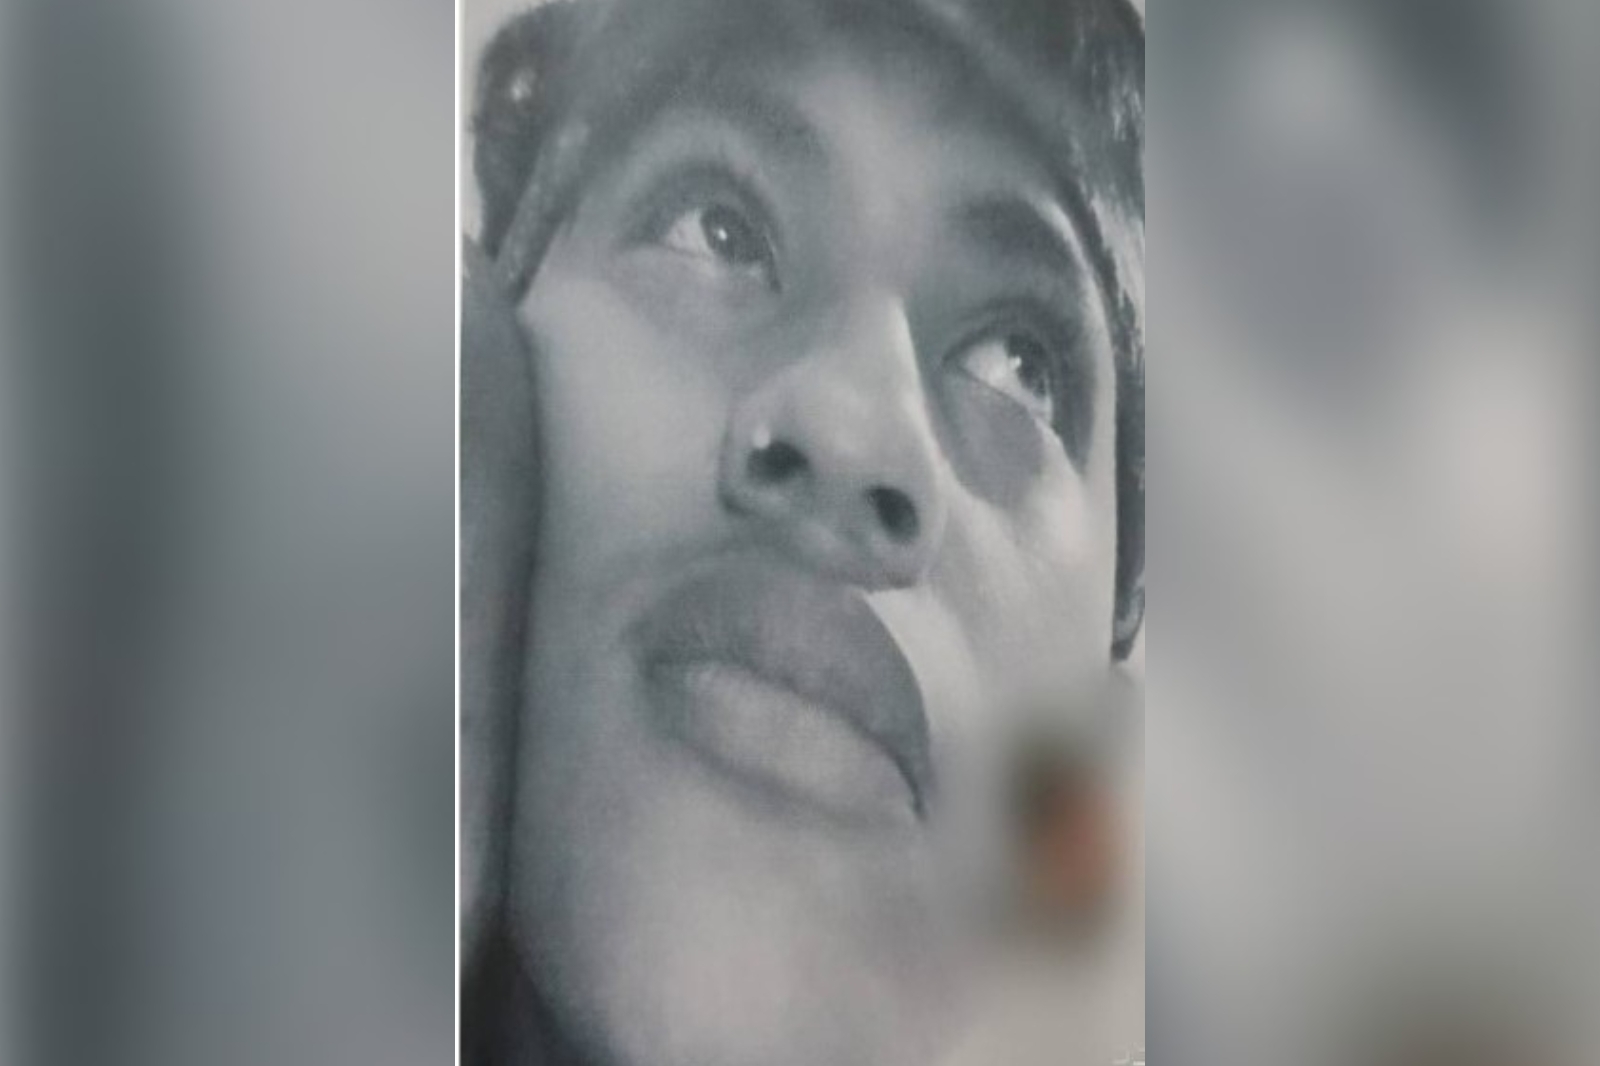 Alerta Ámber Quintana Roo: Reportan desaparición de joven de 17 años en Isla Mujeres